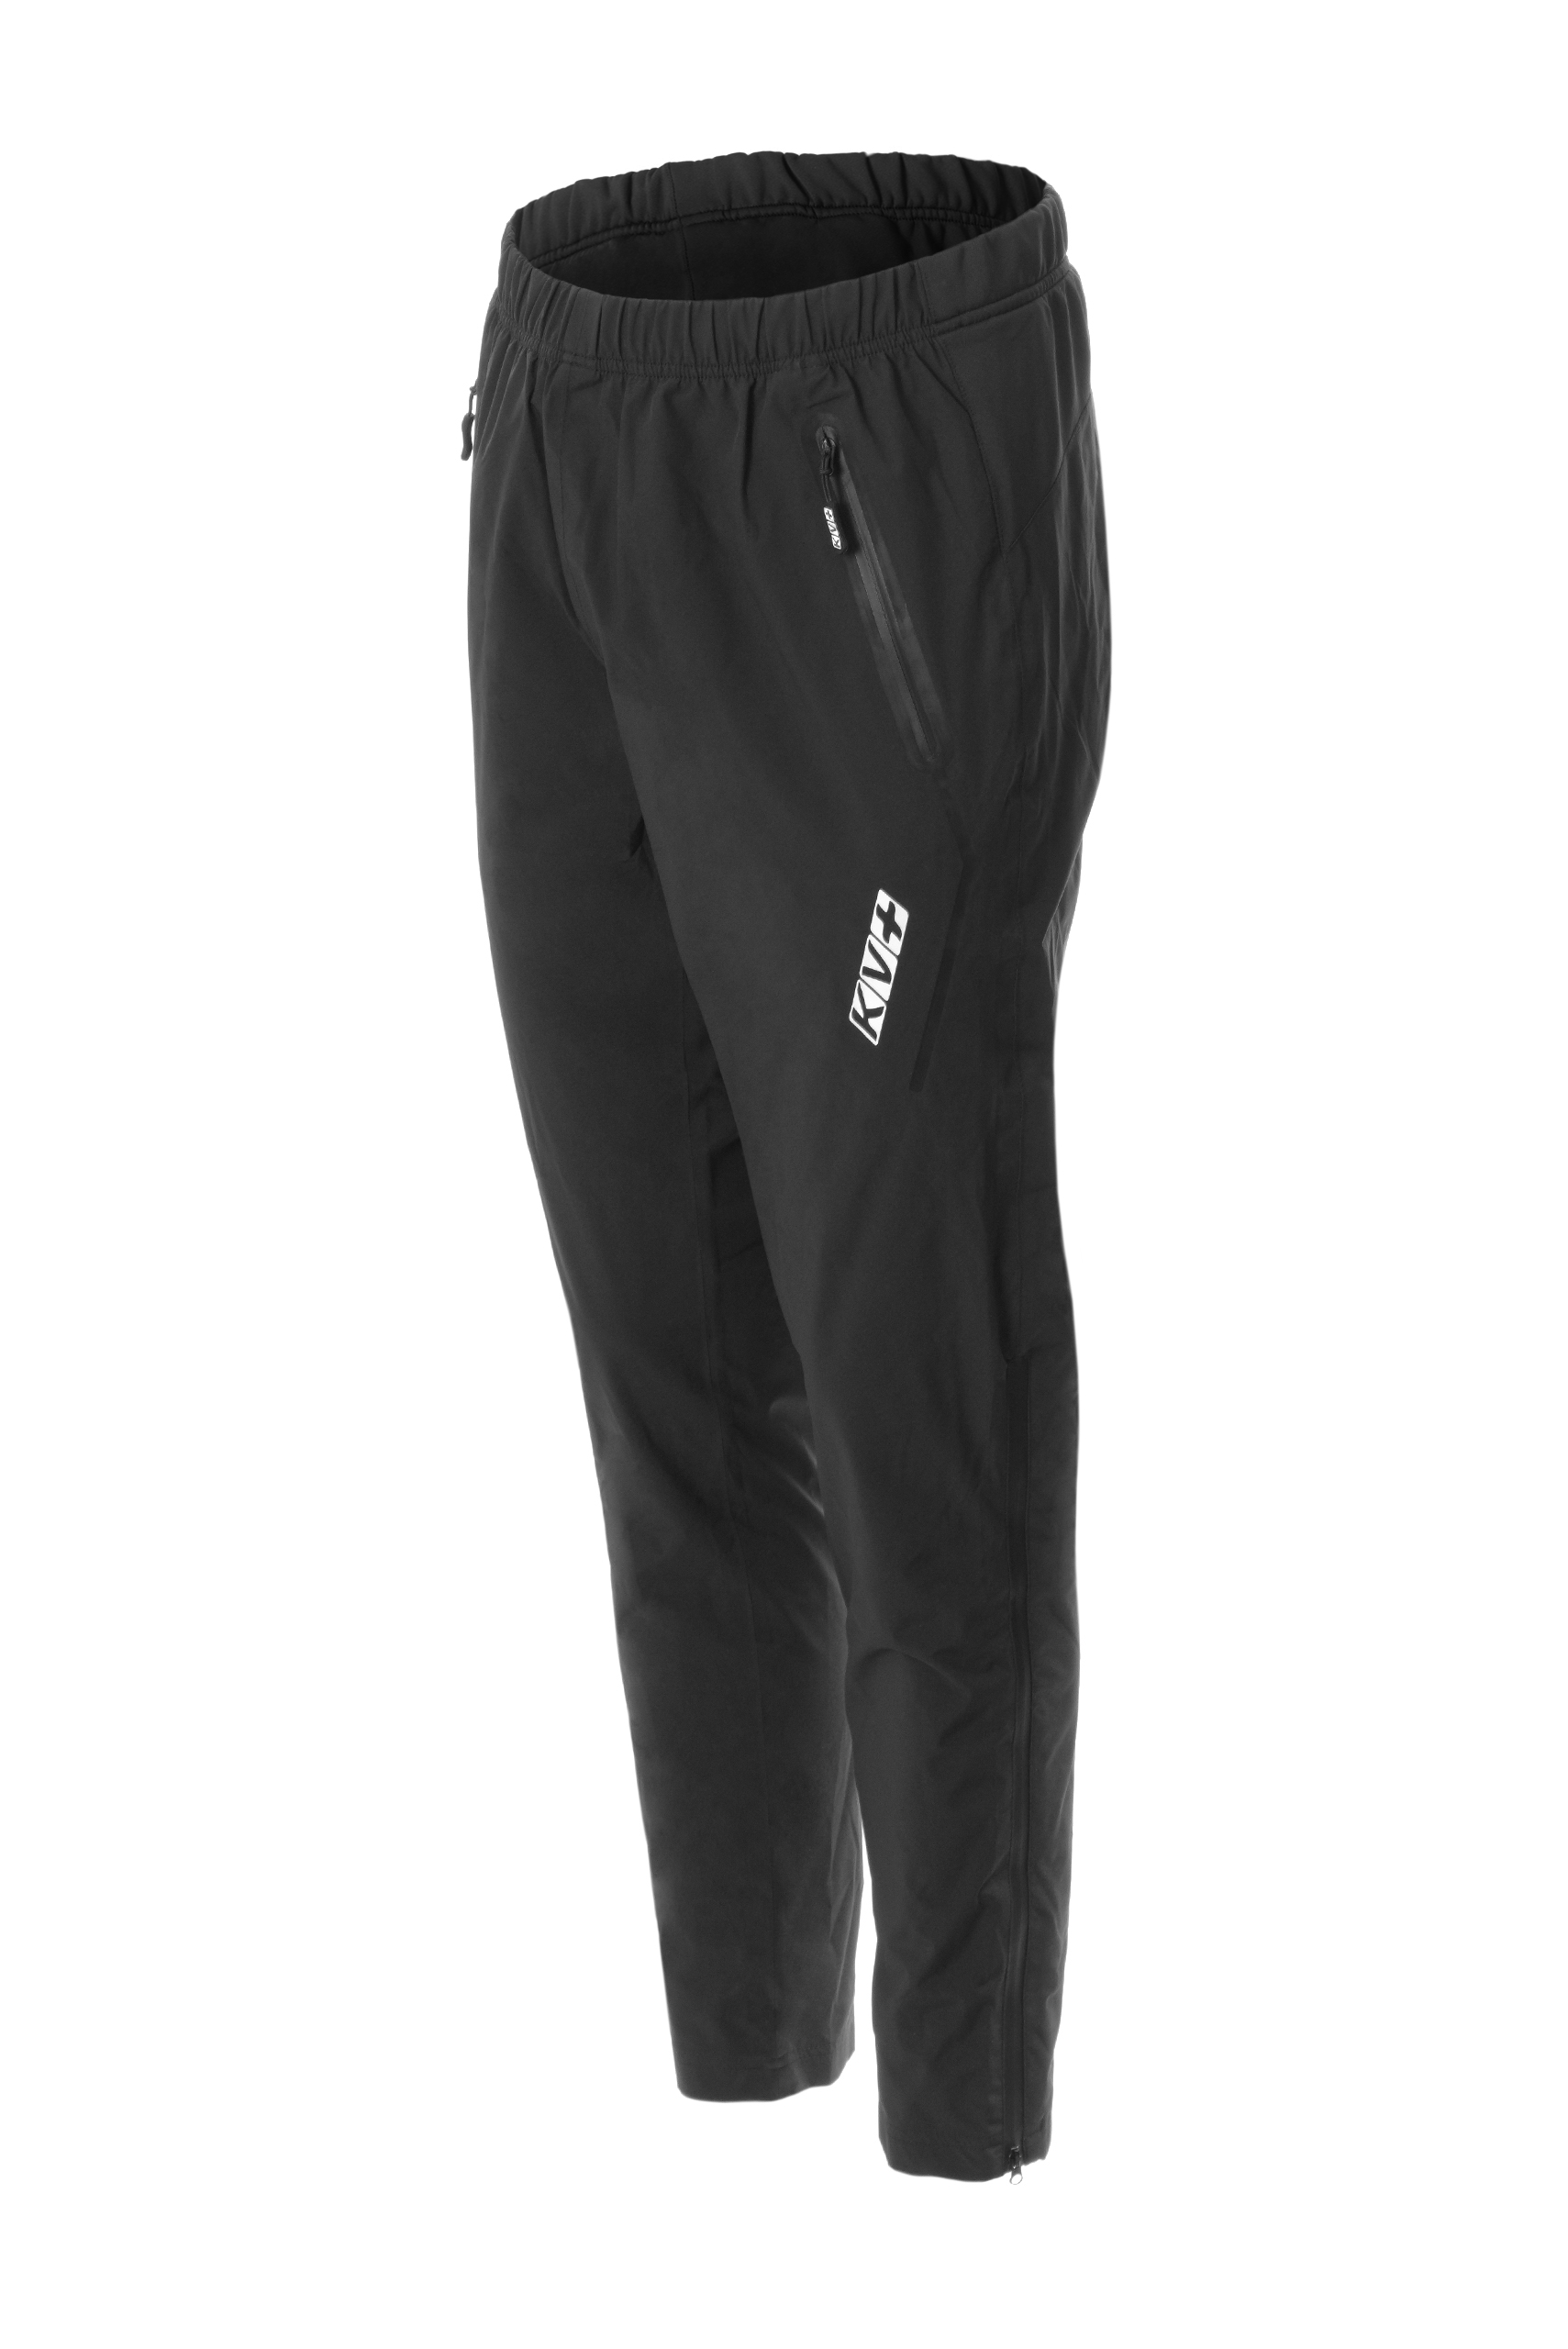 Спортивные брюки мужские KV+ IRELAND pants waterproof черные XXS